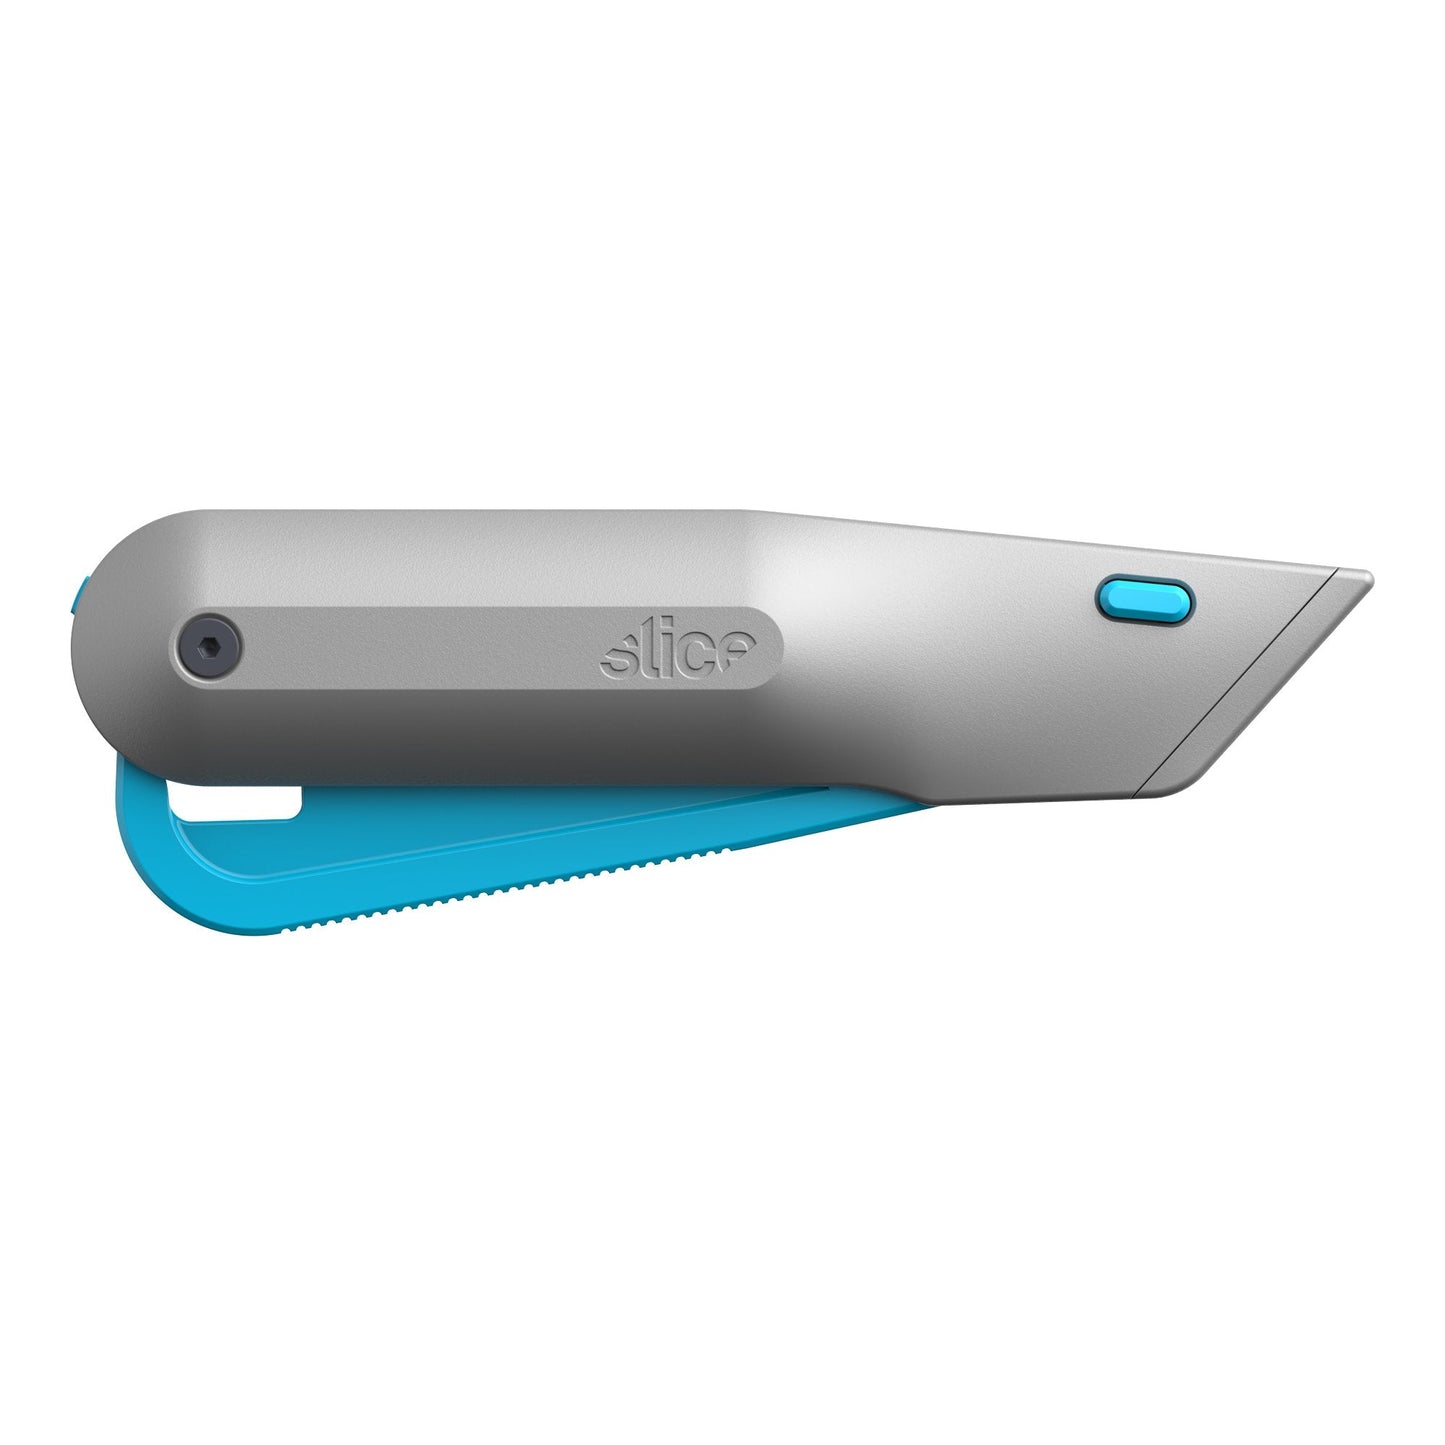 Smart-Retracting Metal Squeeze Knife